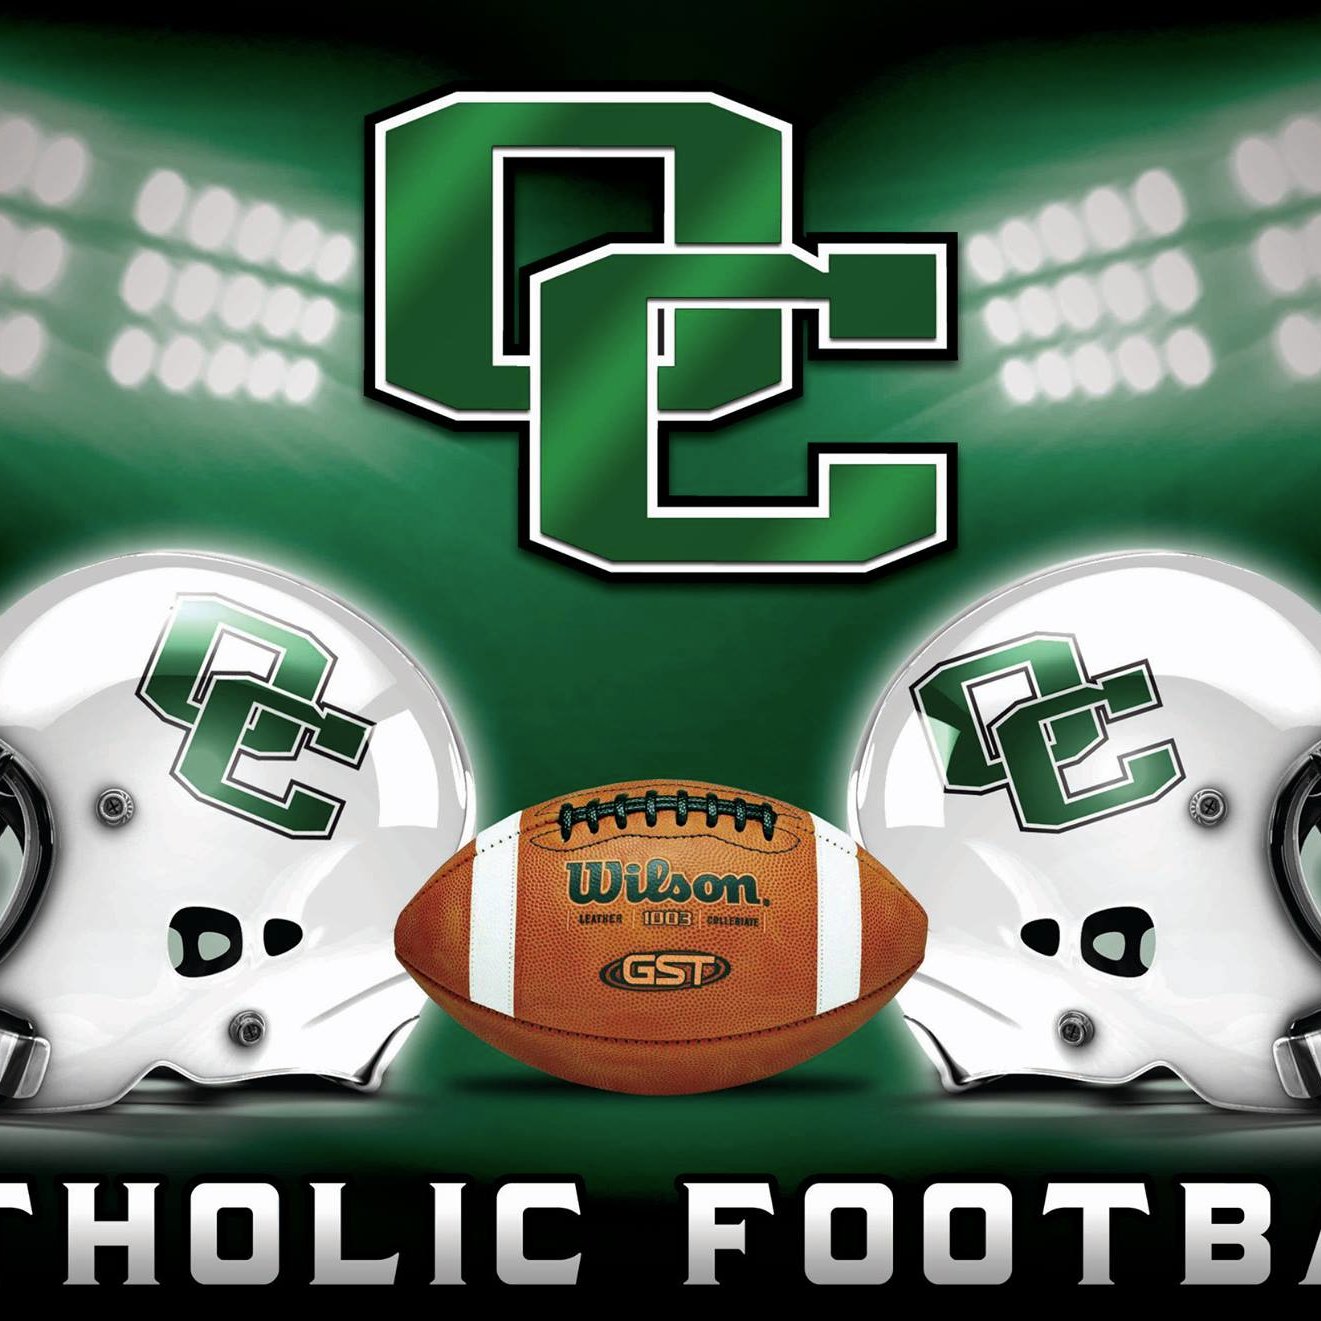 Owensboro Catholic Football